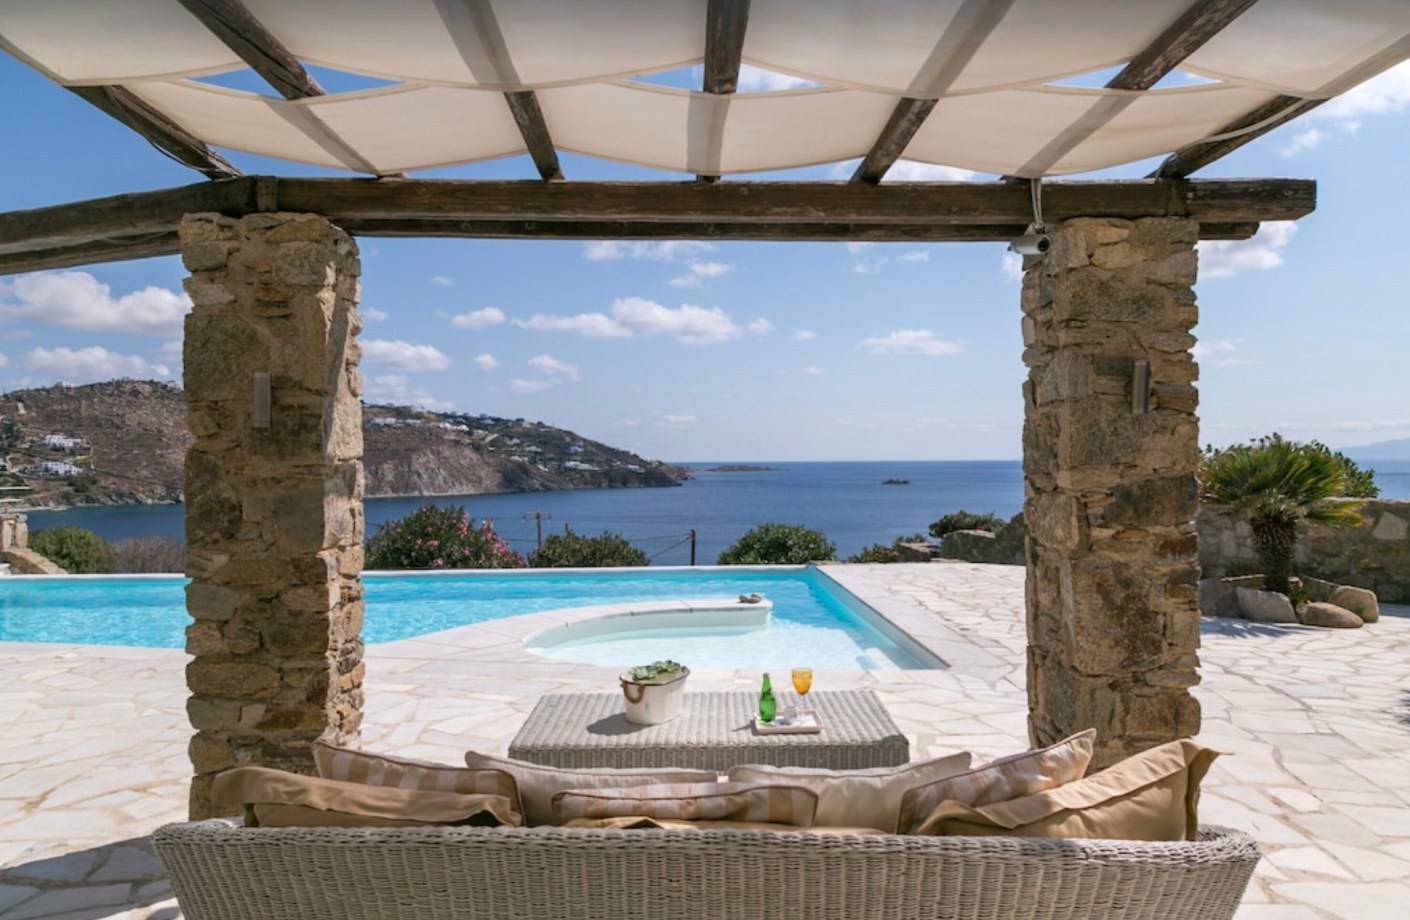 Ocean view from Cycladic Castle Villa Rental in Greece